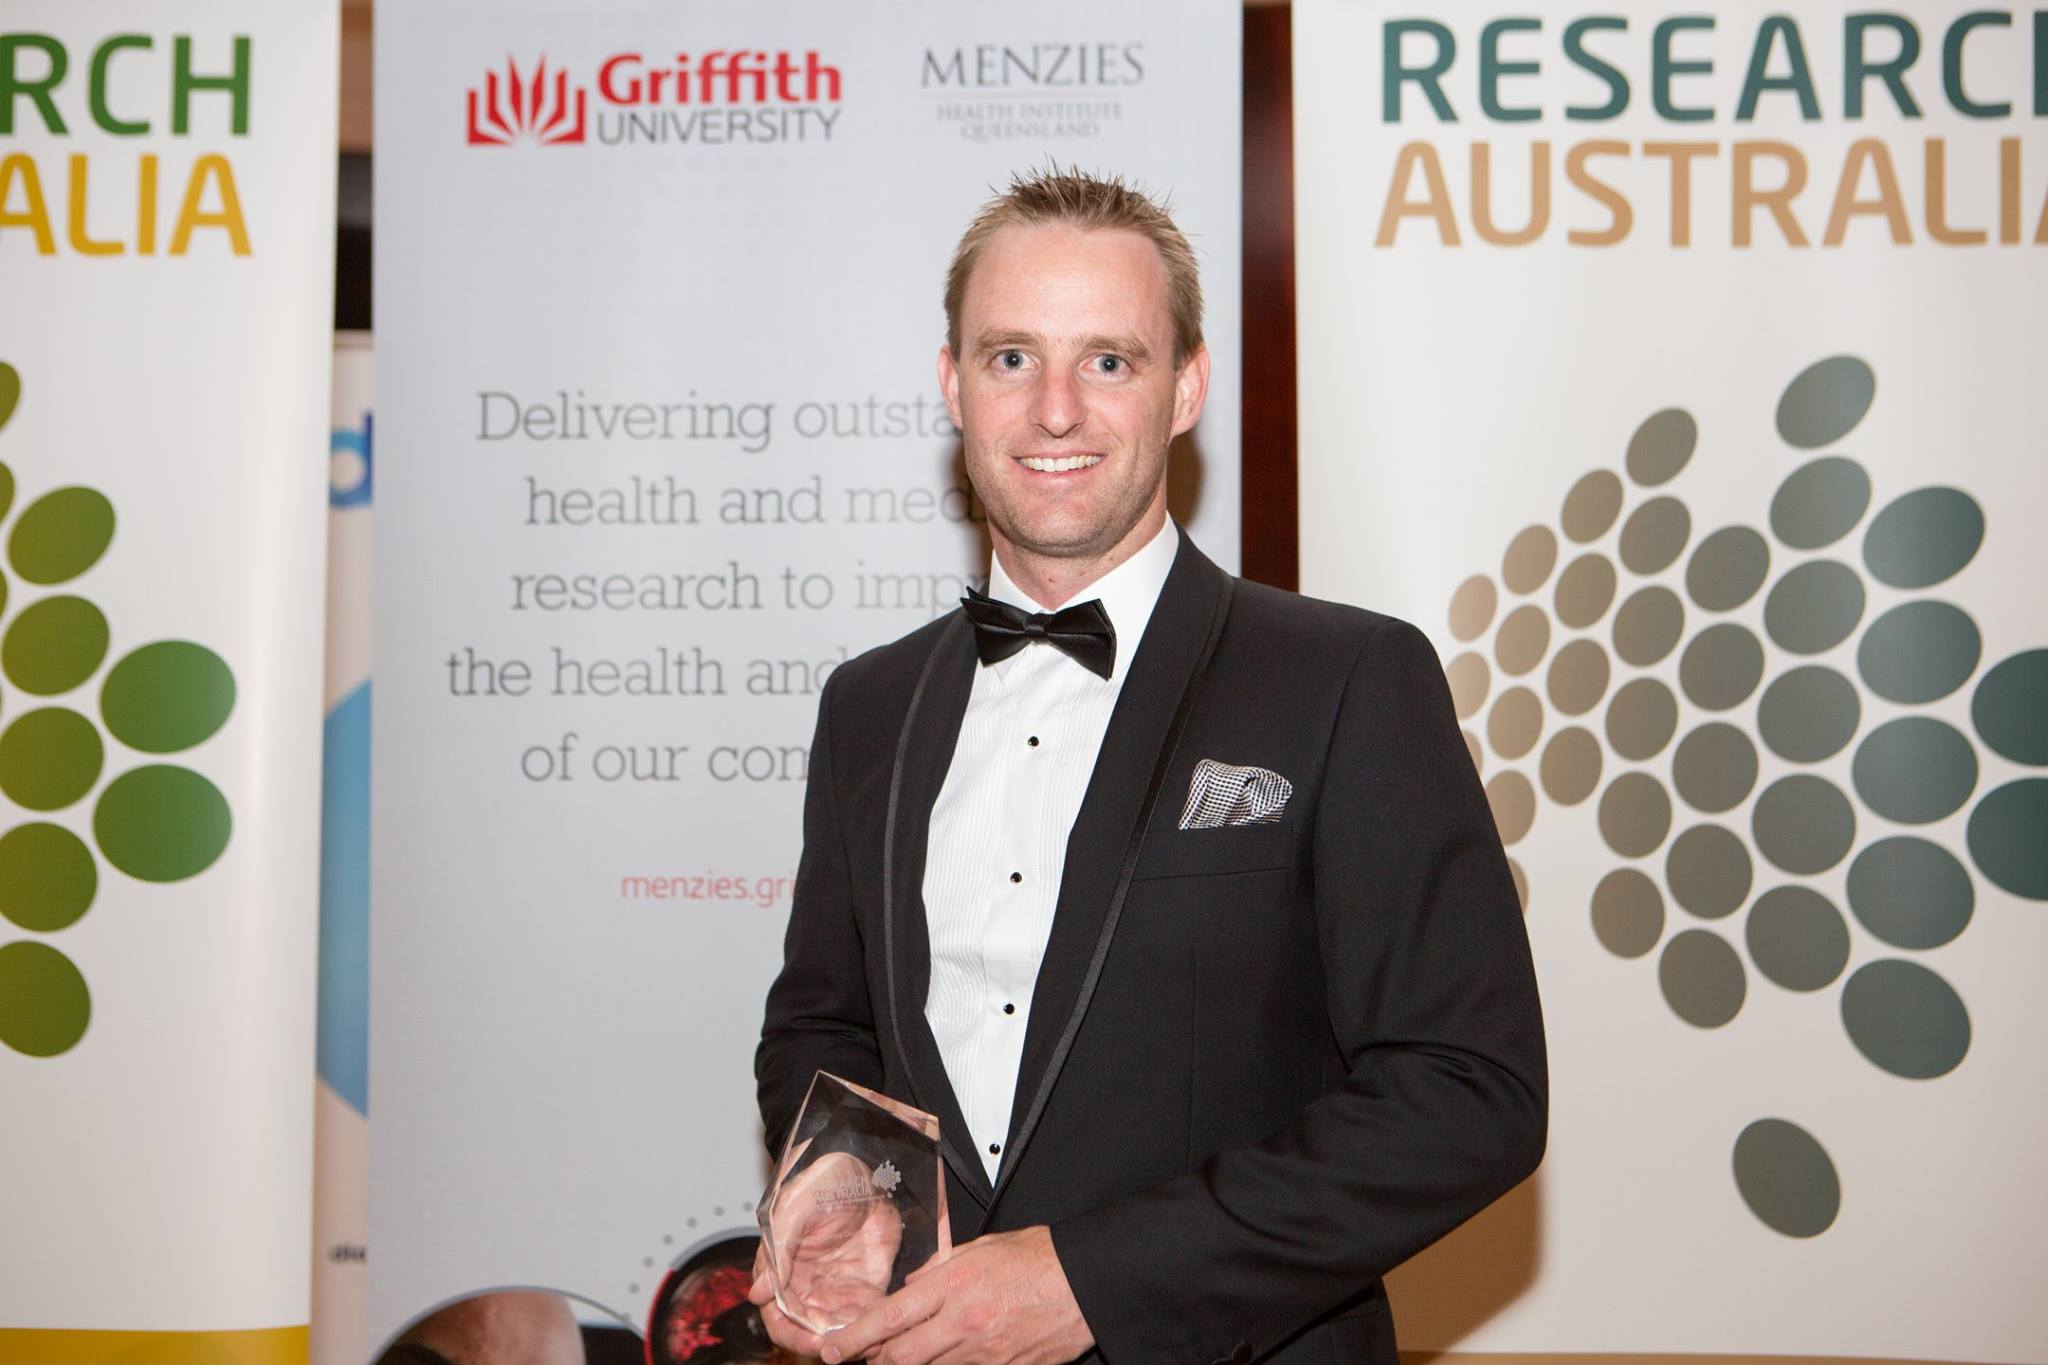 2015 Discovery Award Winner: Dr Andrew Gardner